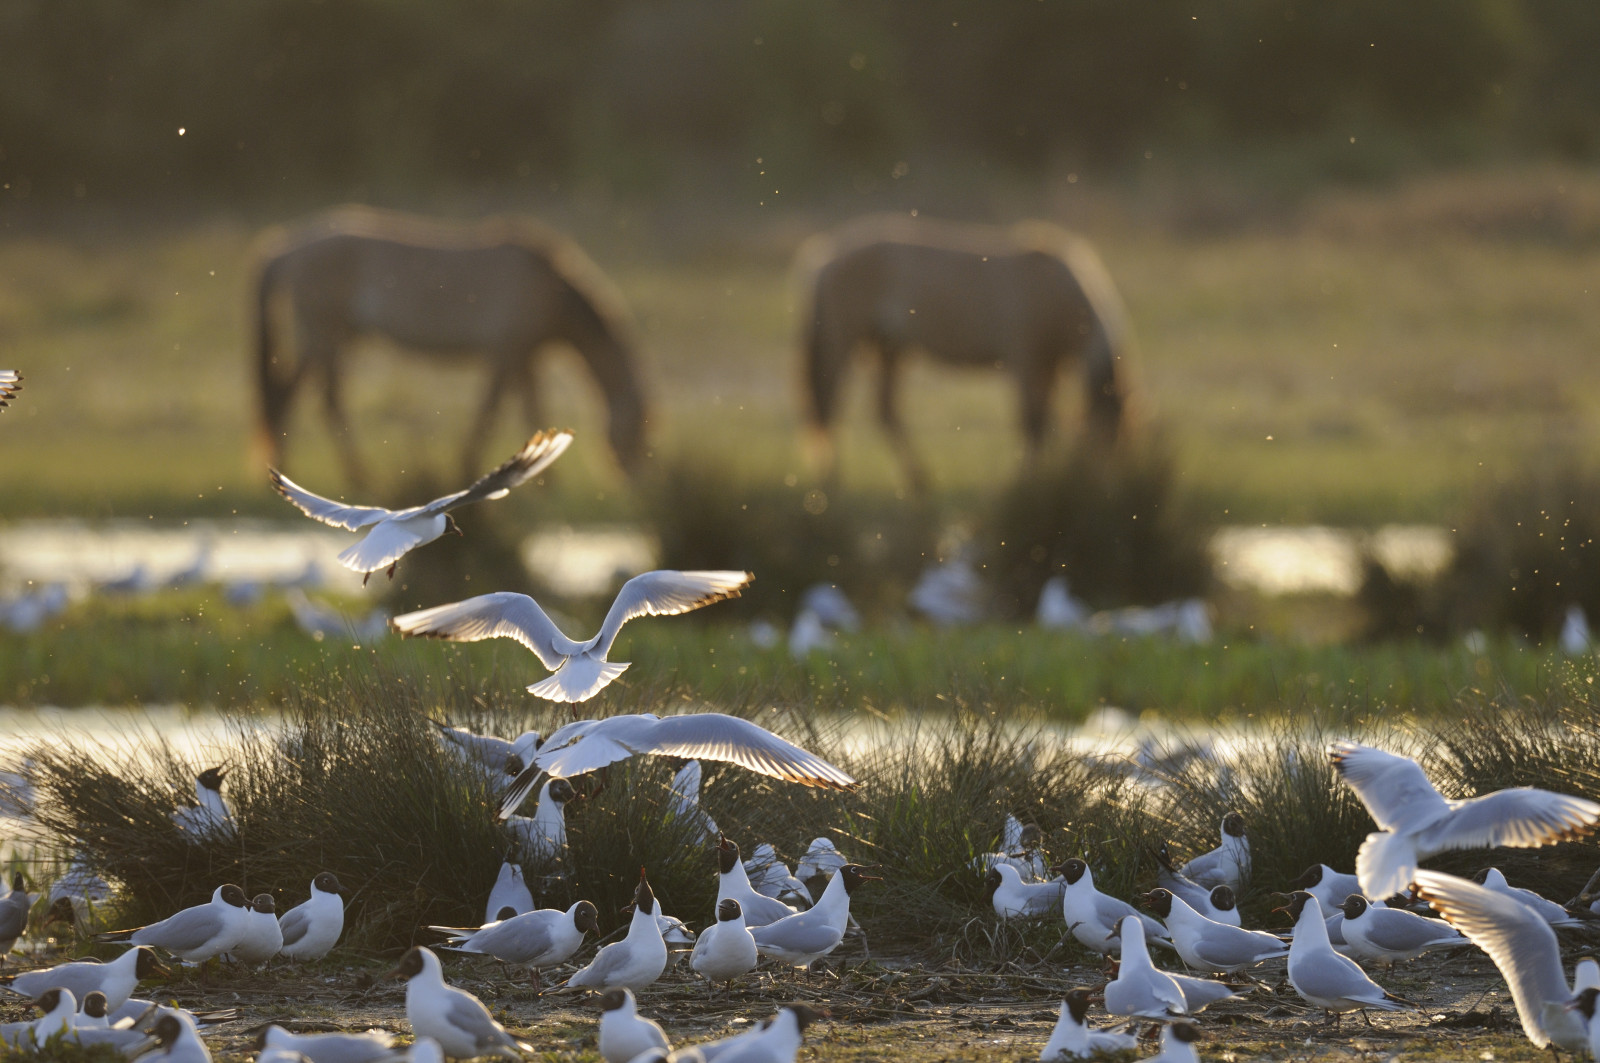 Hensons et oiseaux cohabitent dans la Baie de Somme © Dominnique DELFINO